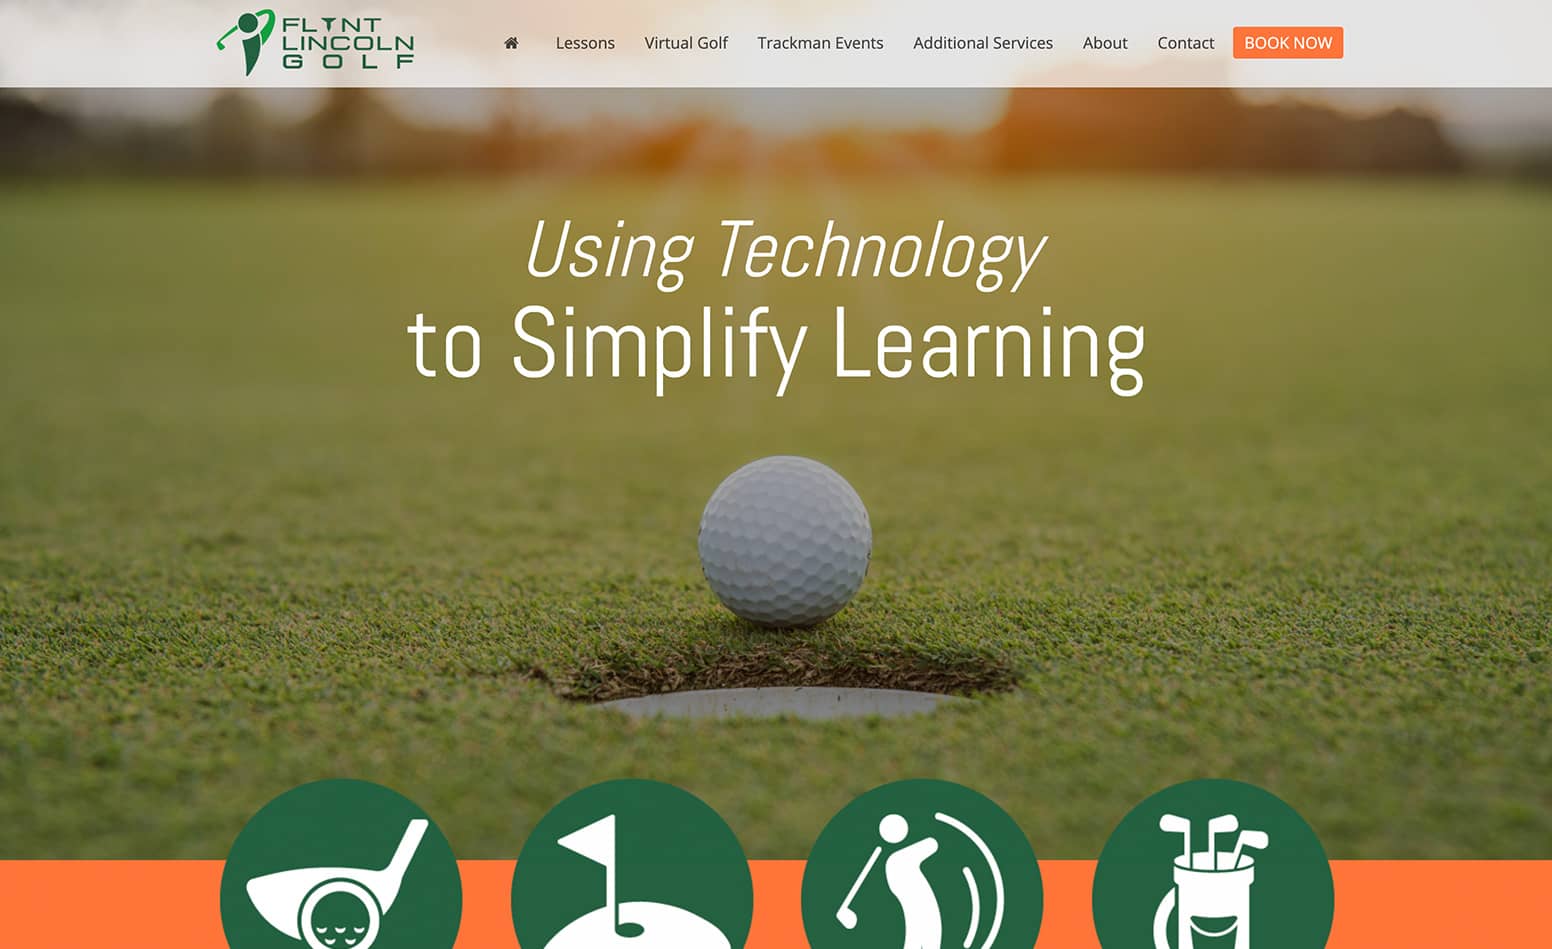 Flynt Lincoln Golf custom website design, custom website design Western MA, web designer Northern CT, logo design CT